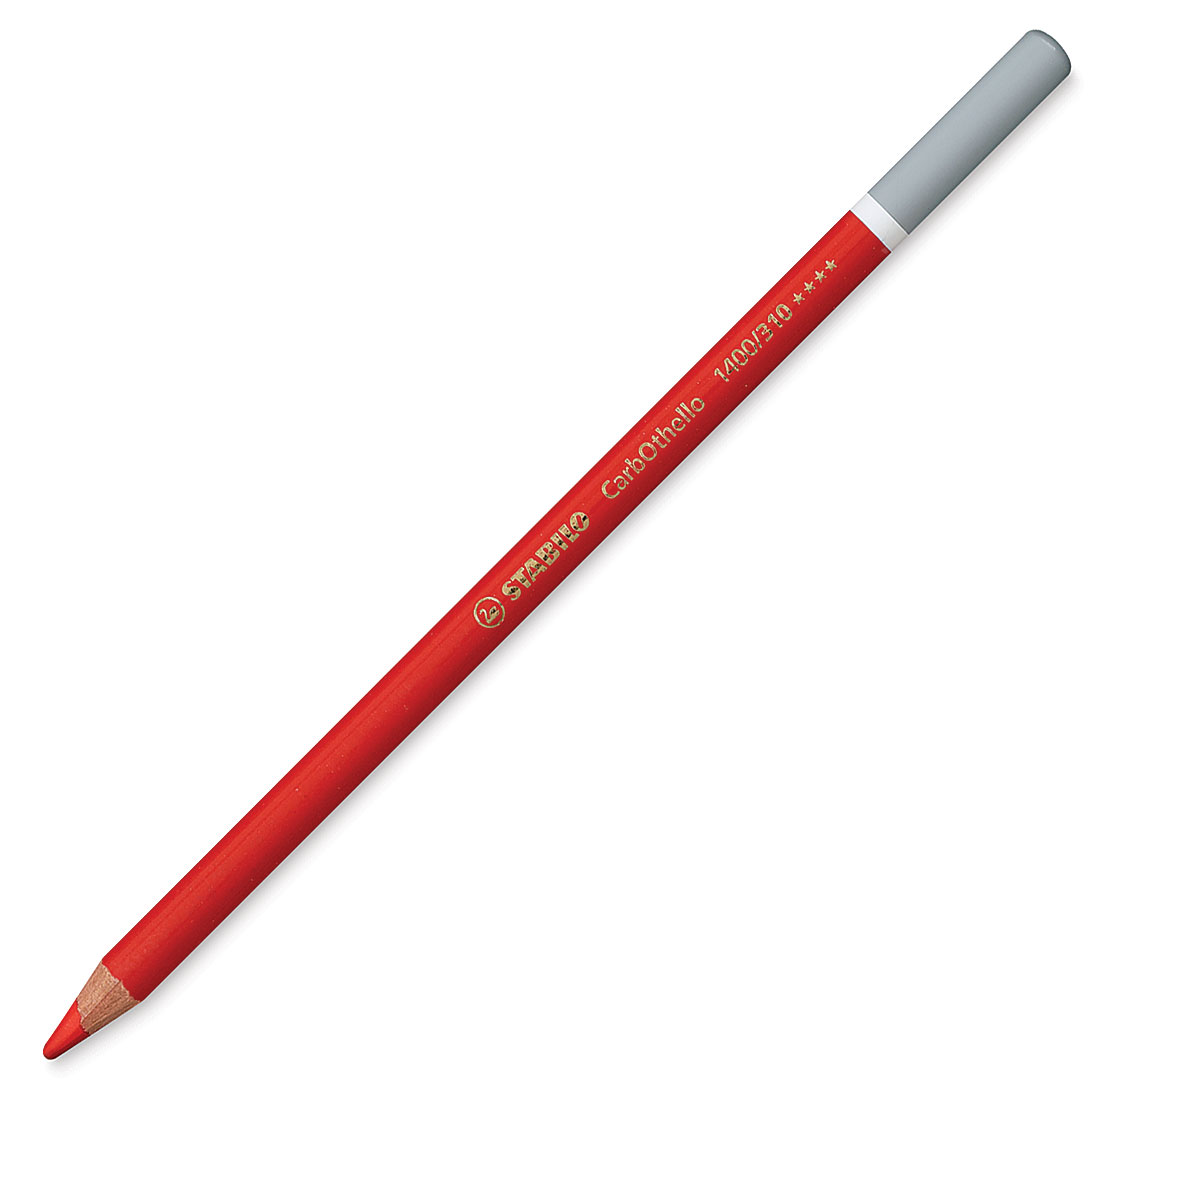 Stabilo CarbOthello Pastel Pencil Tins, 36 pencils 26526